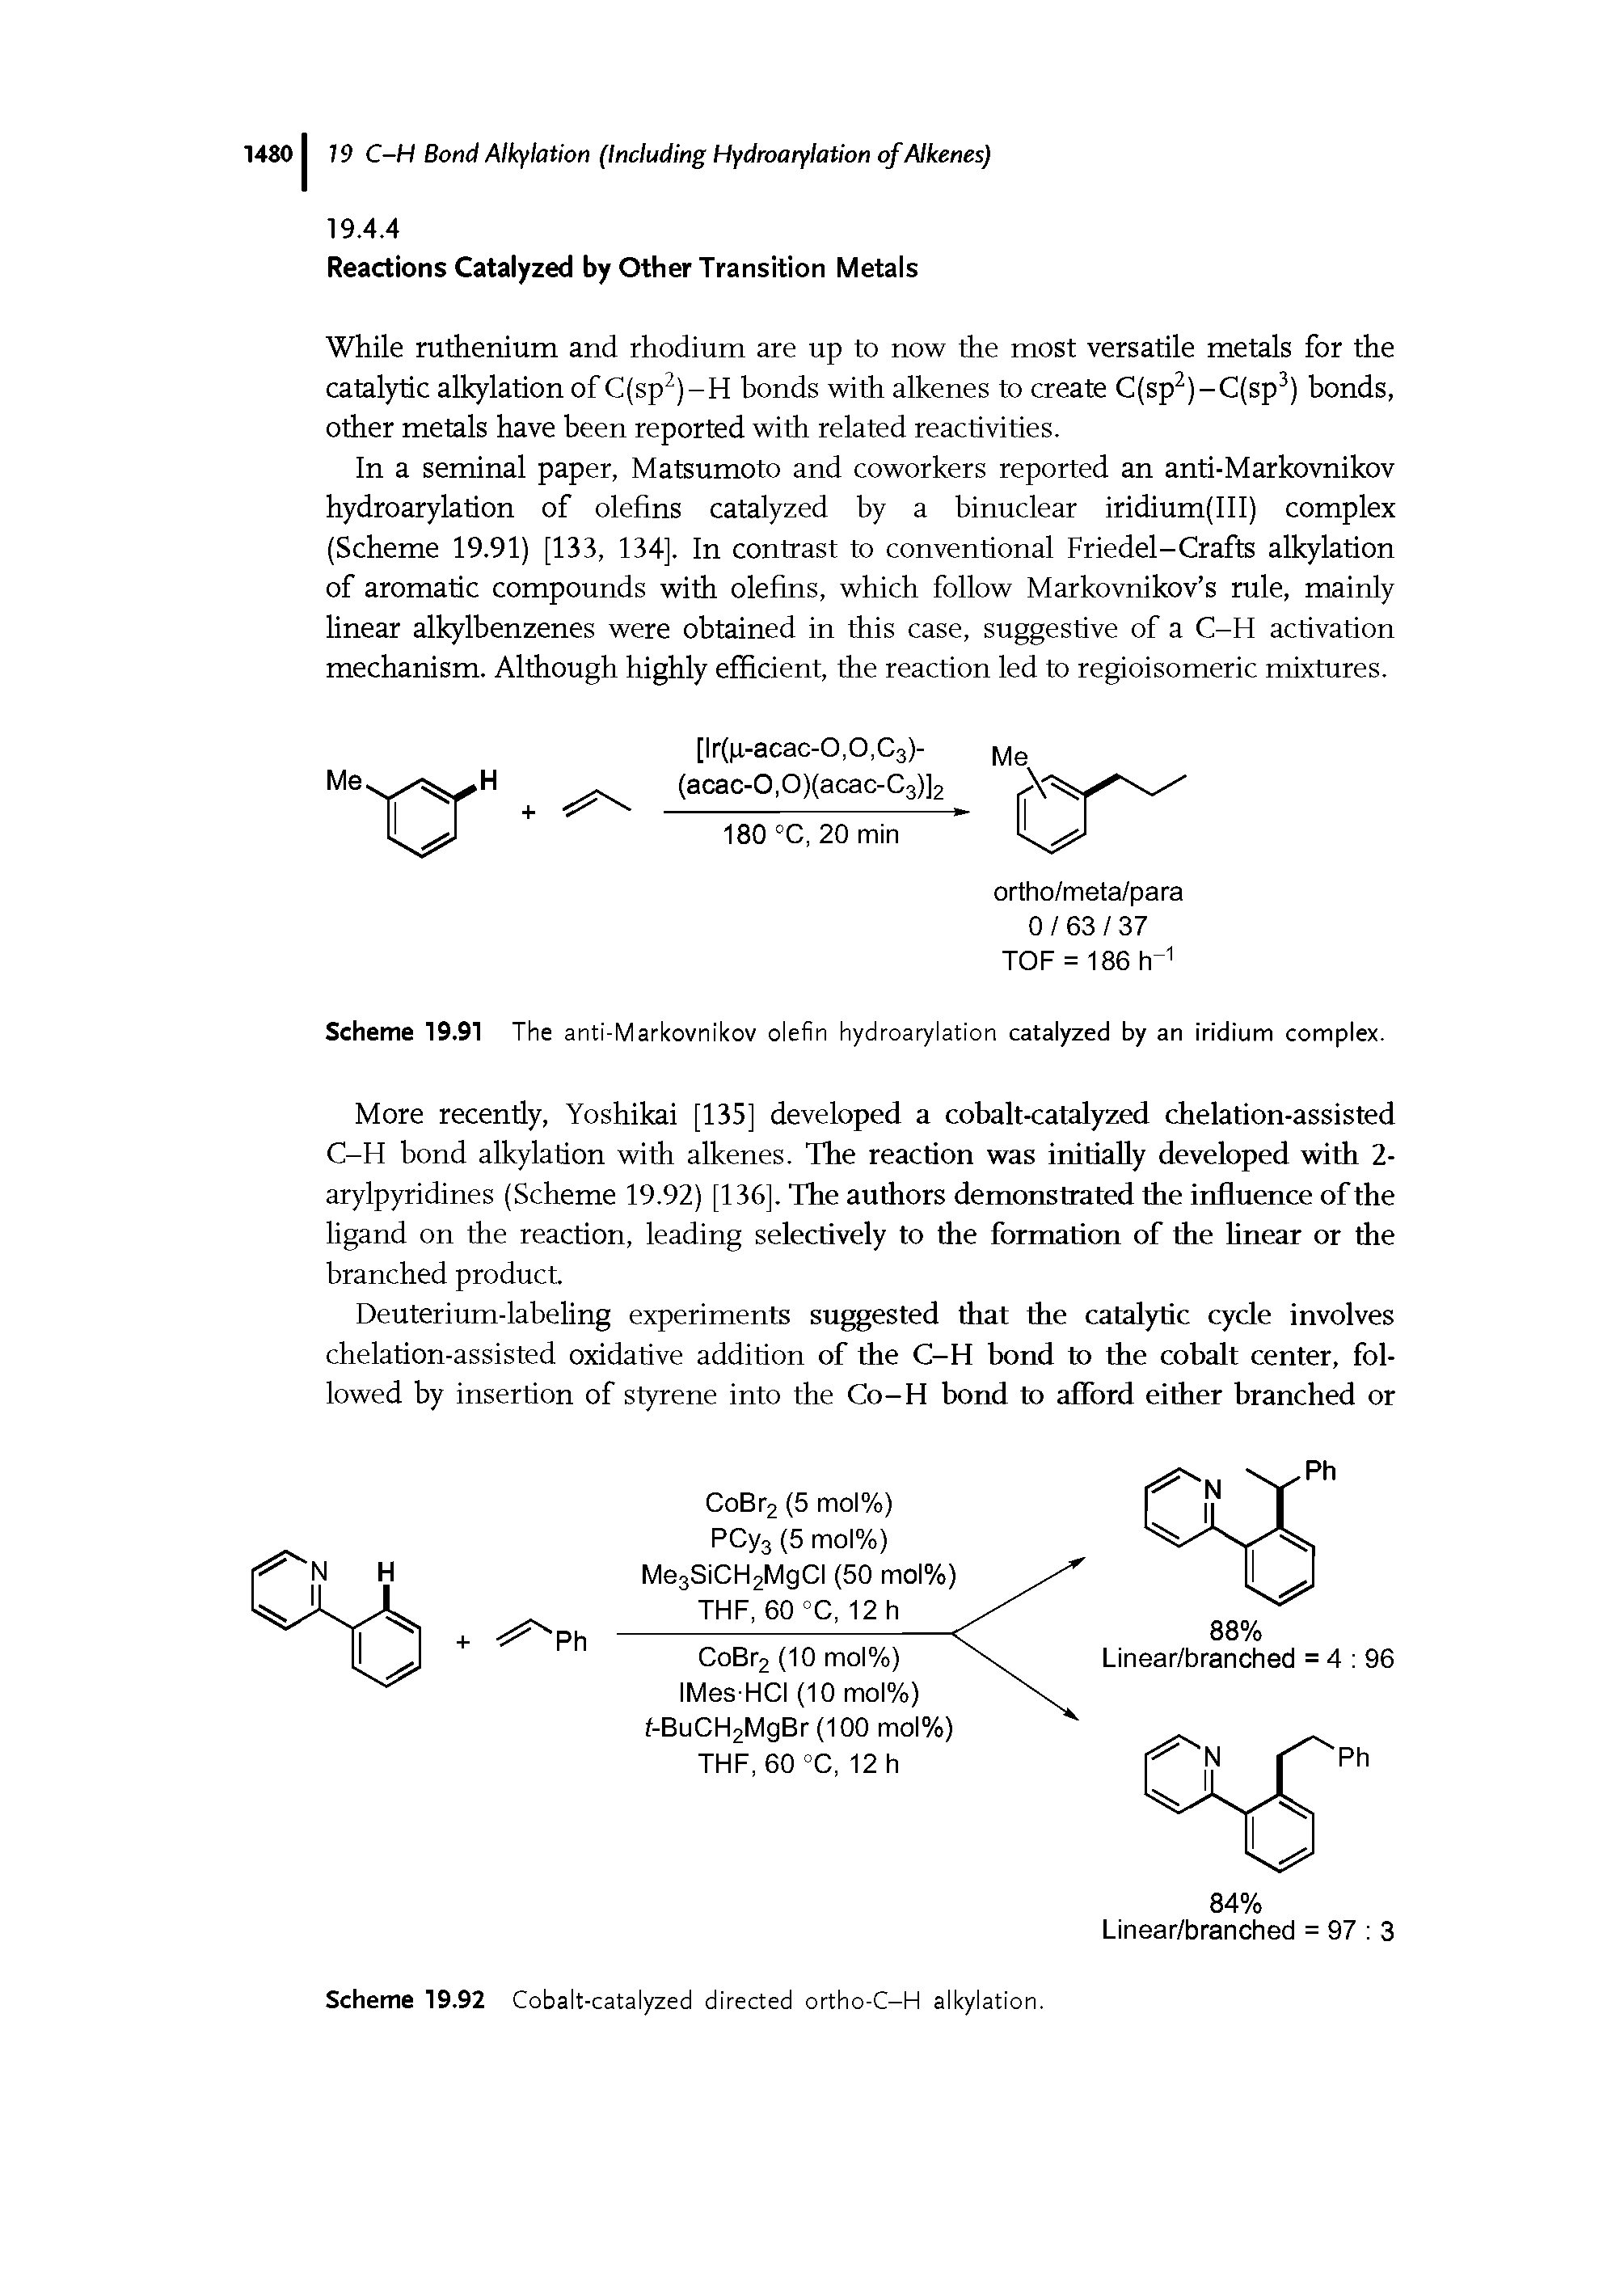 Scheme 19.91 The anti-Markovnikov olefin hydroarylation catalyzed by an iridium complex.